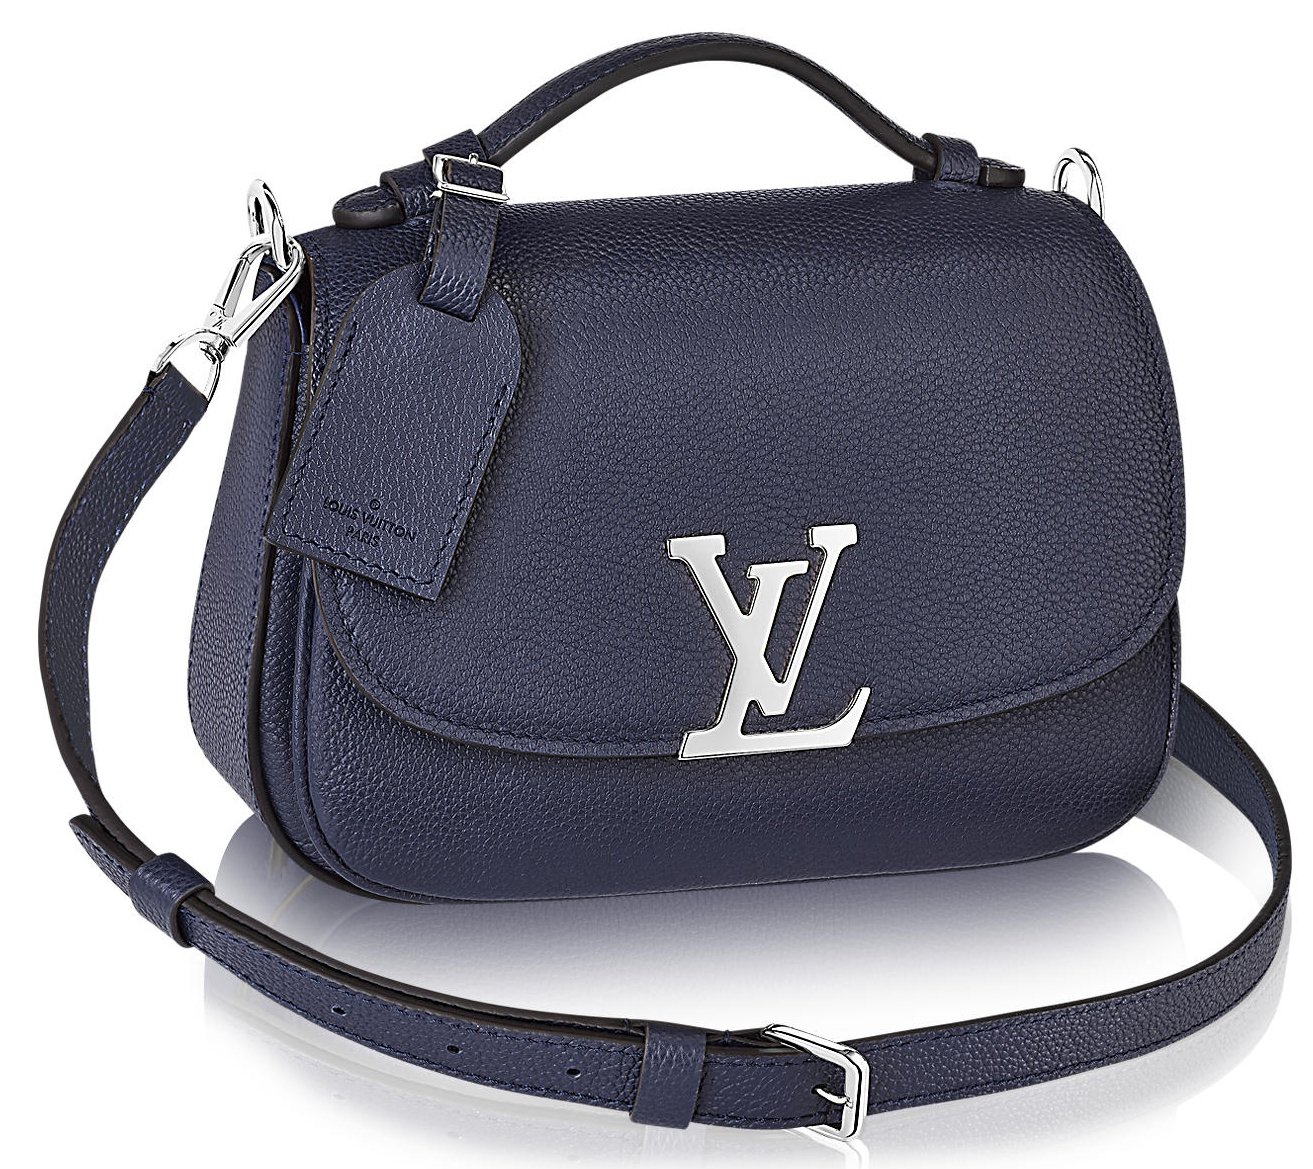 Louis Vuitton Neo Vivienne In Bleu Marine